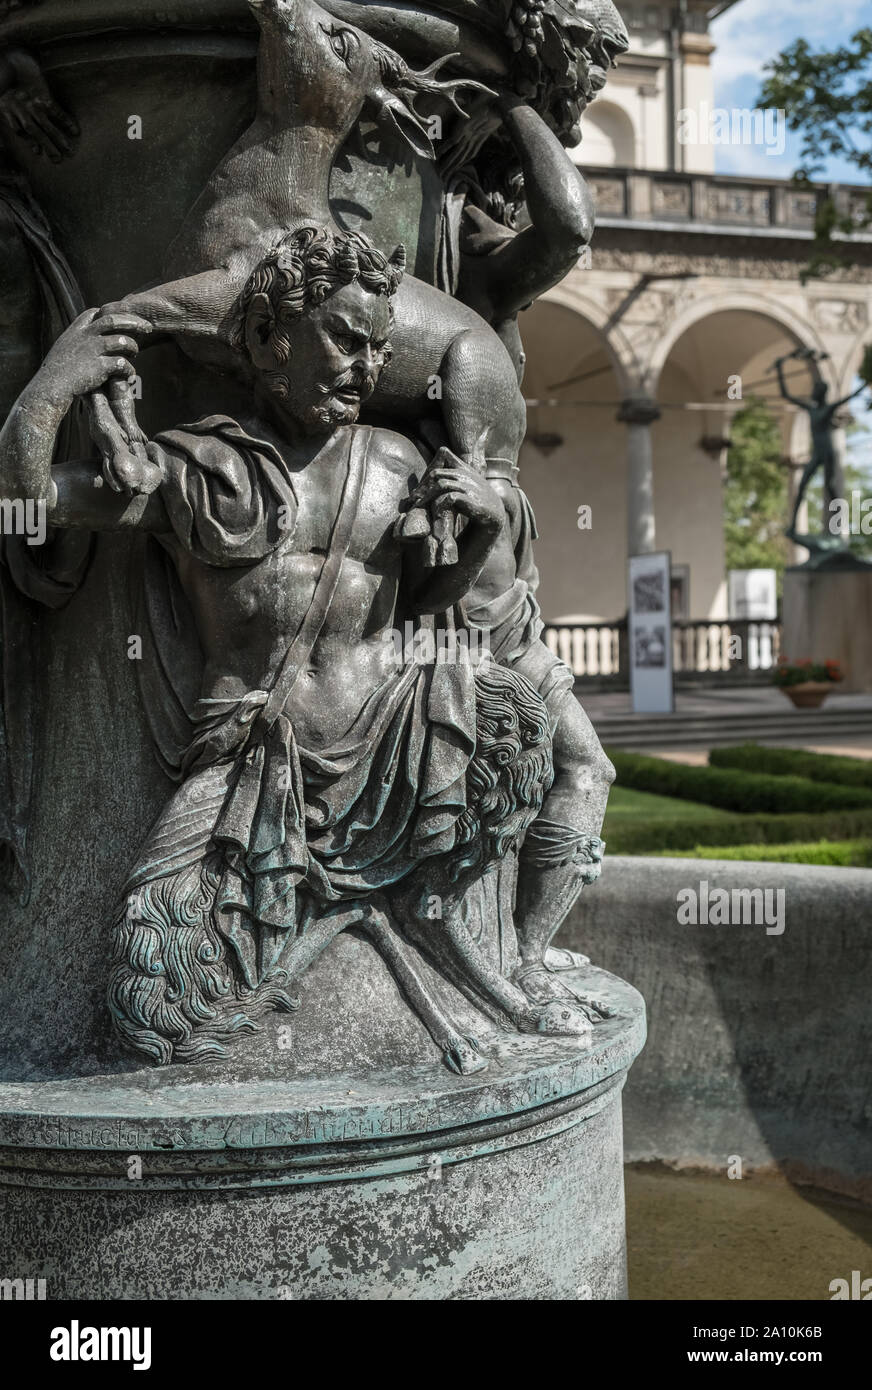 La Section de la fontaine chantante, ornés d'été Royal Belvedere Palace, jardins du château de Prague, Hradcany, Prague, République tchèque. Banque D'Images